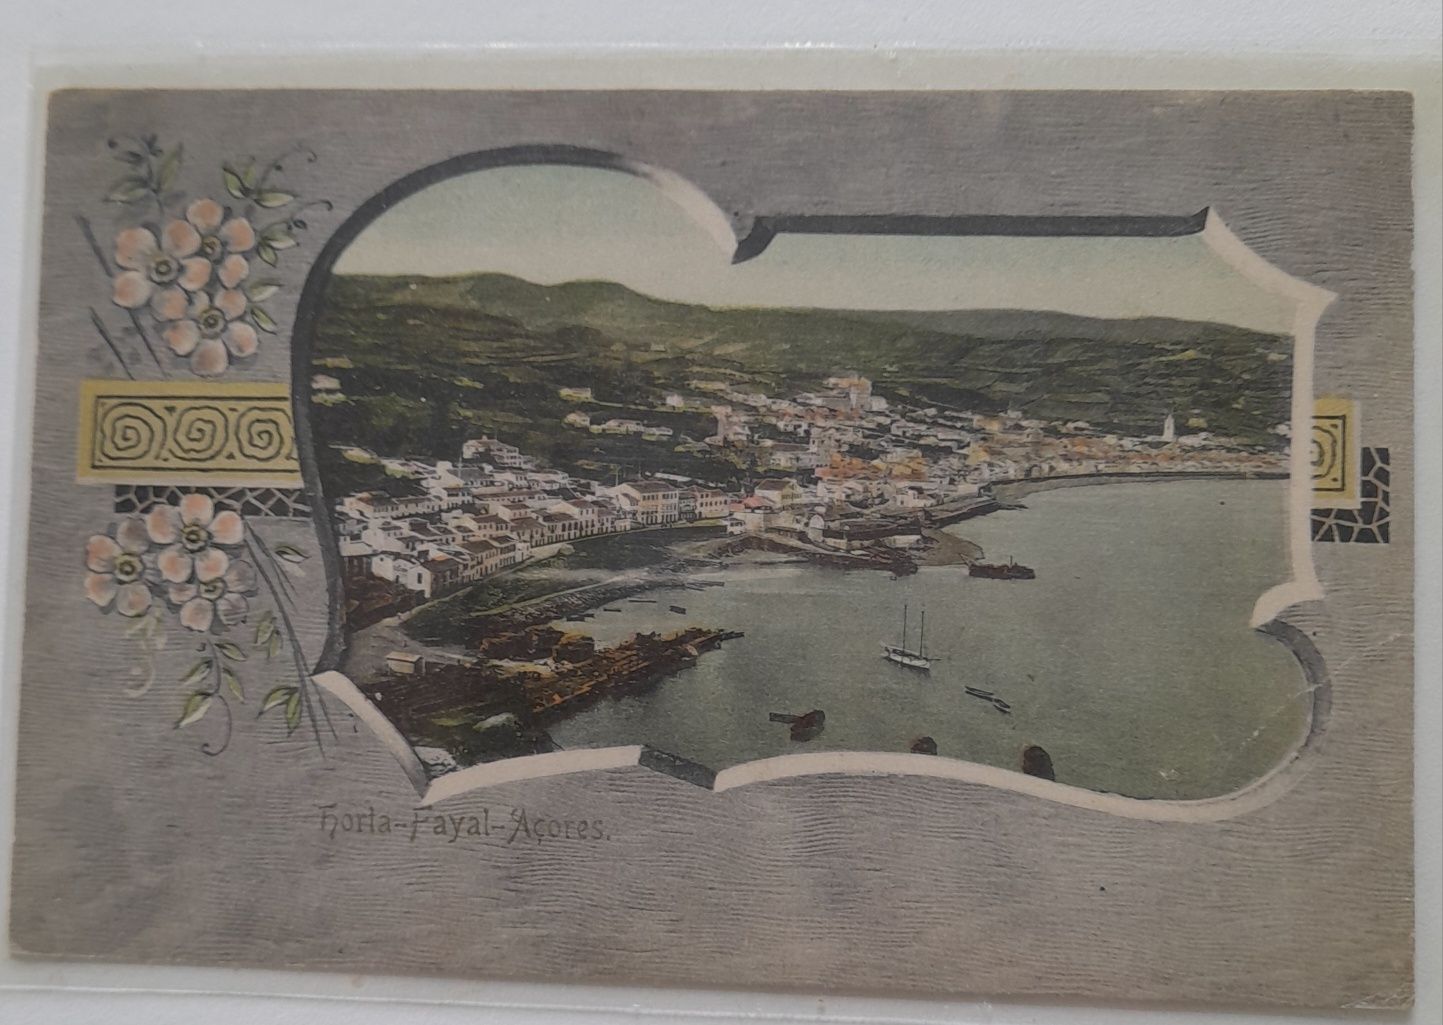 Açores Postal Antigo com vista da Horta-Faial.